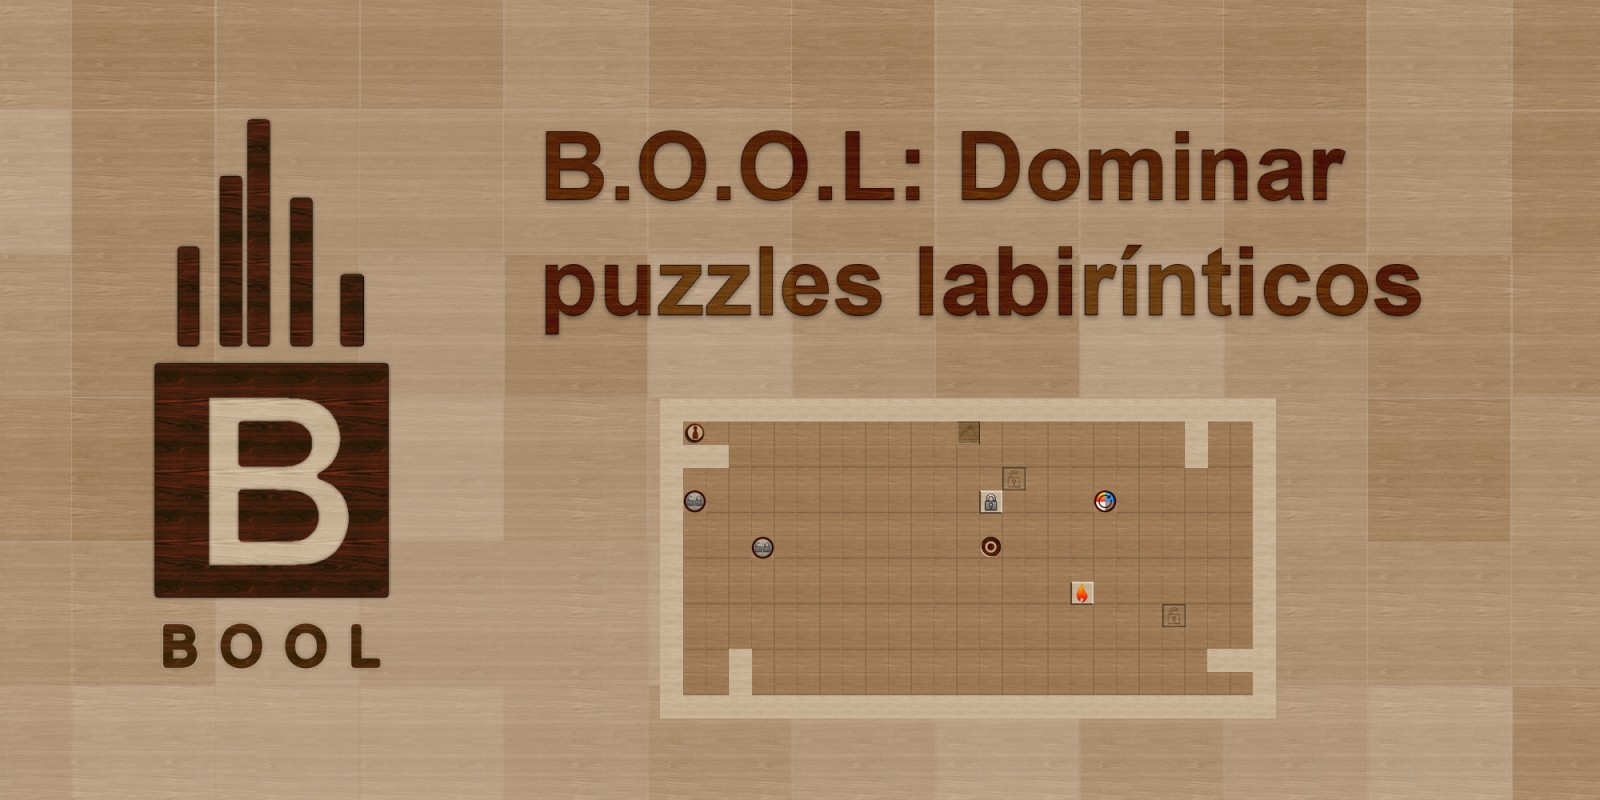 B.O.O.L: Dominar puzzles labirínticos